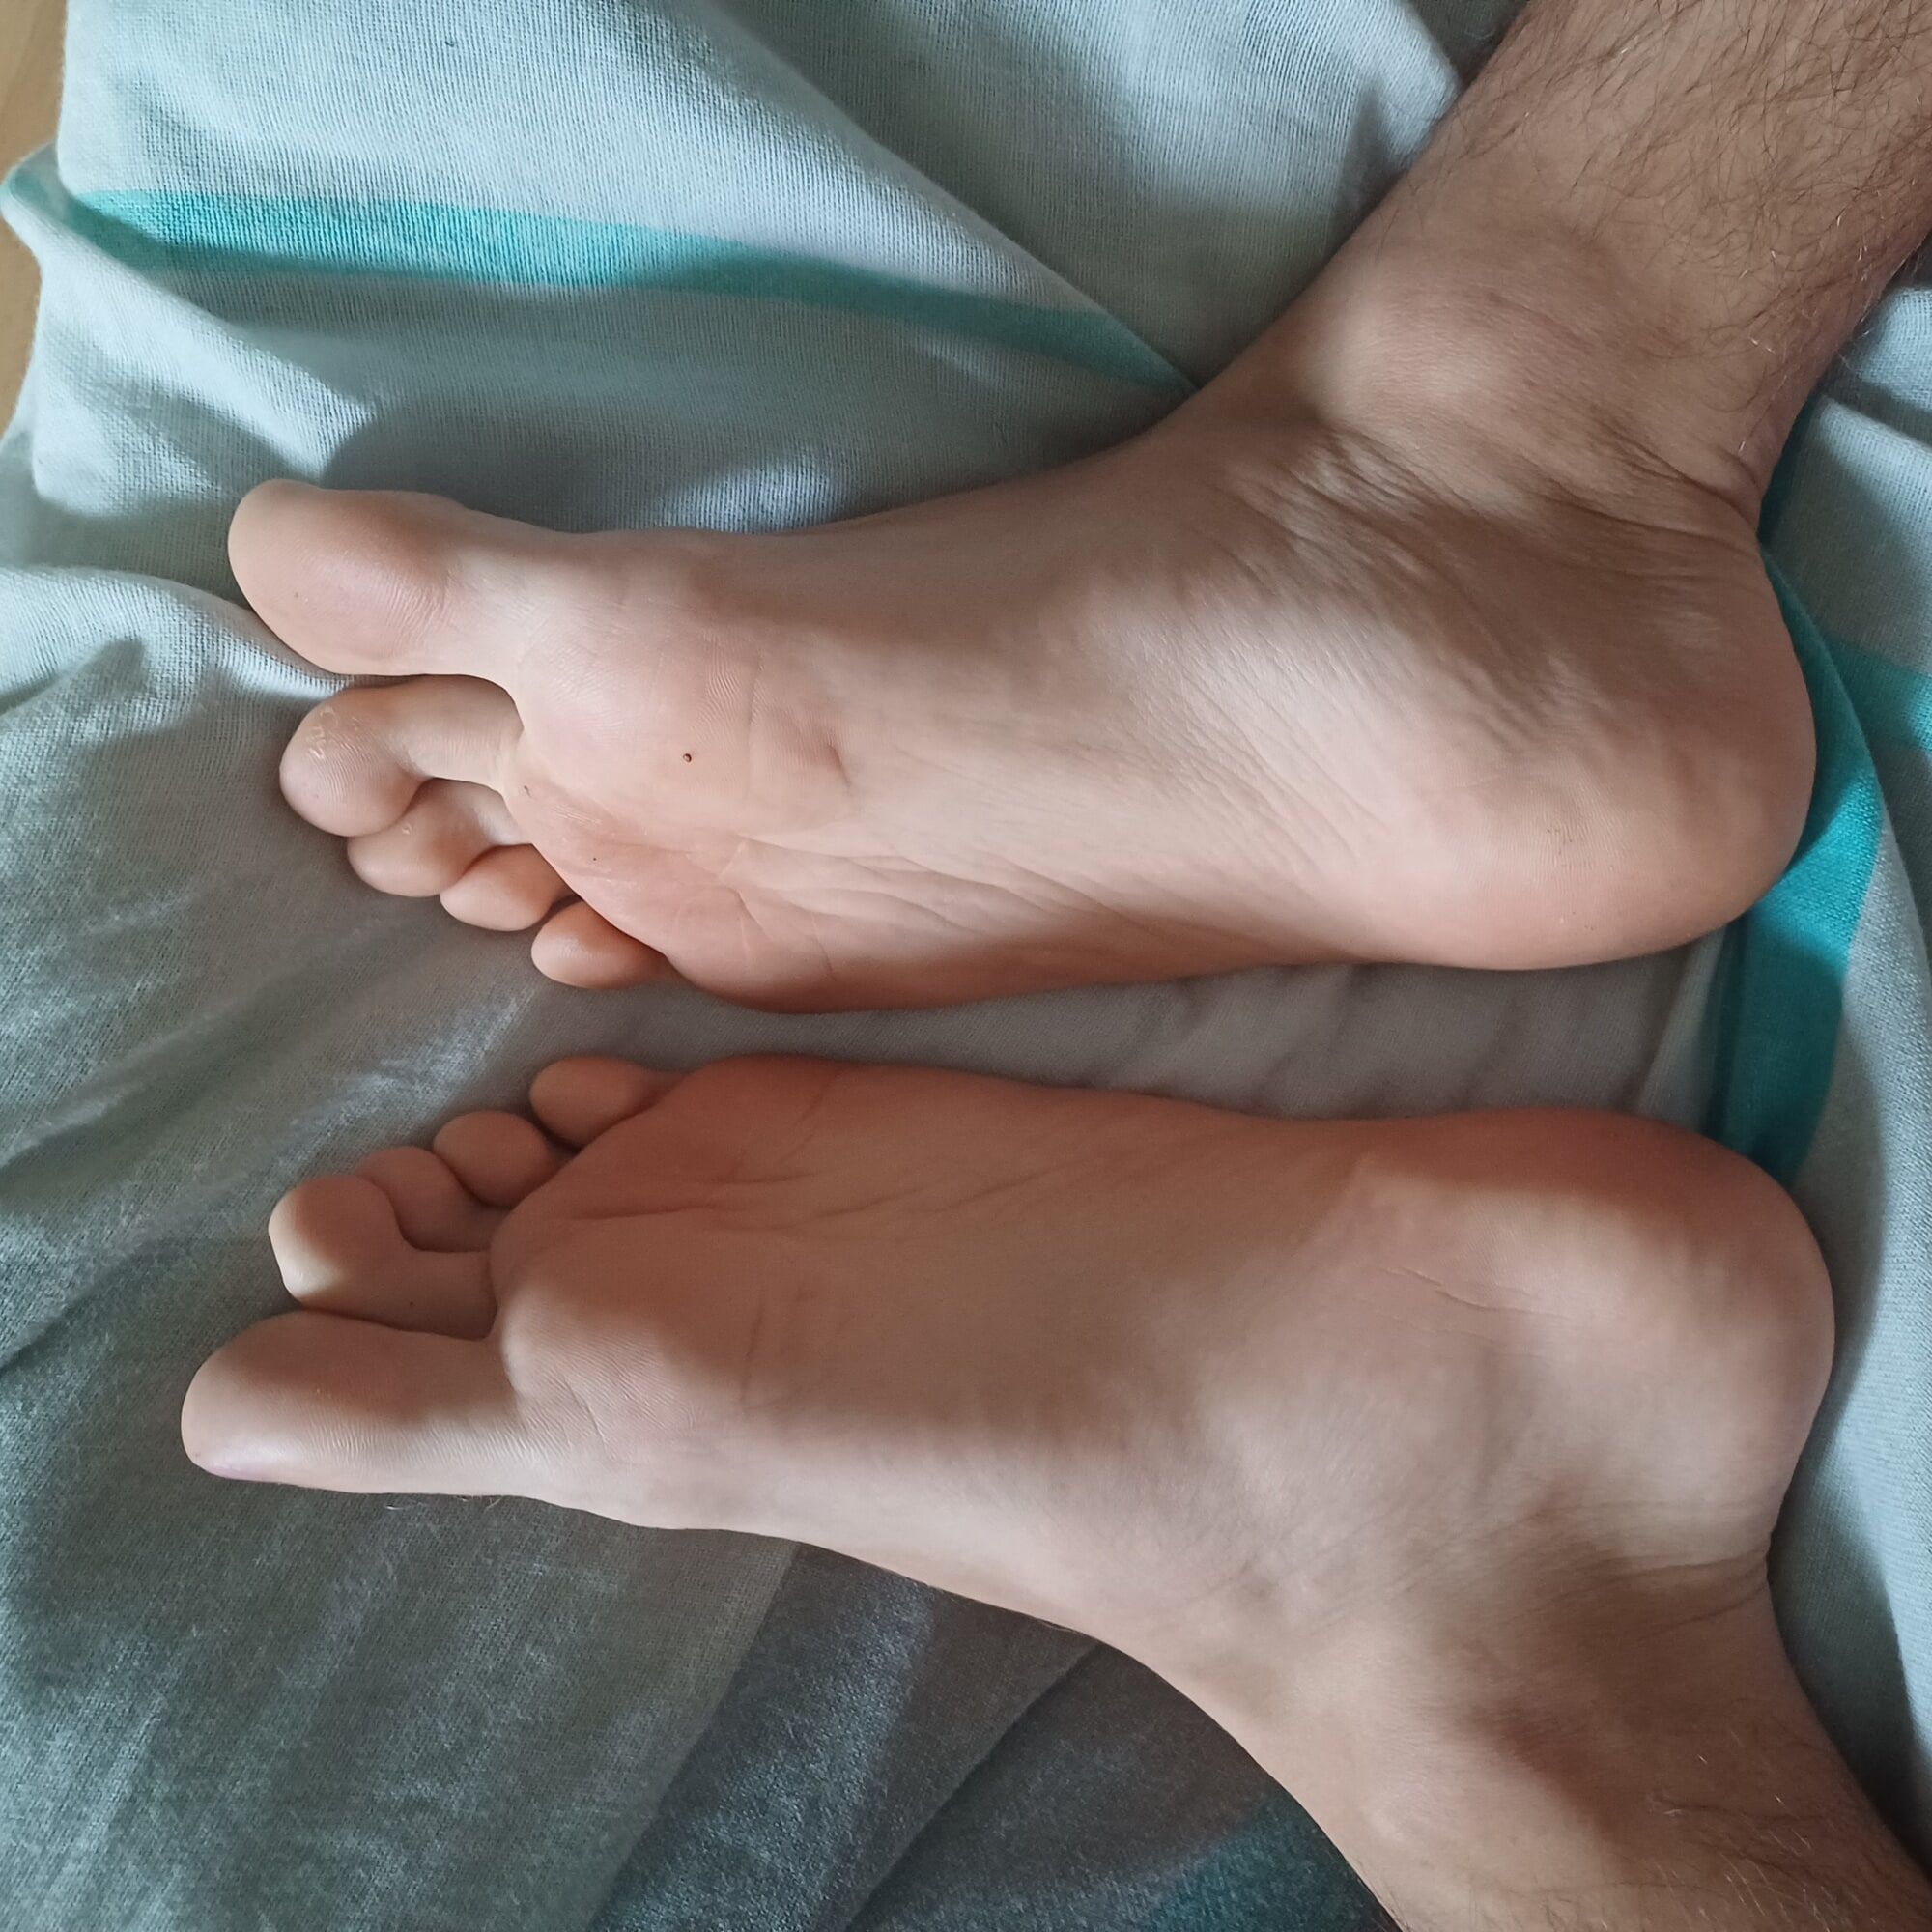 Twink's feet